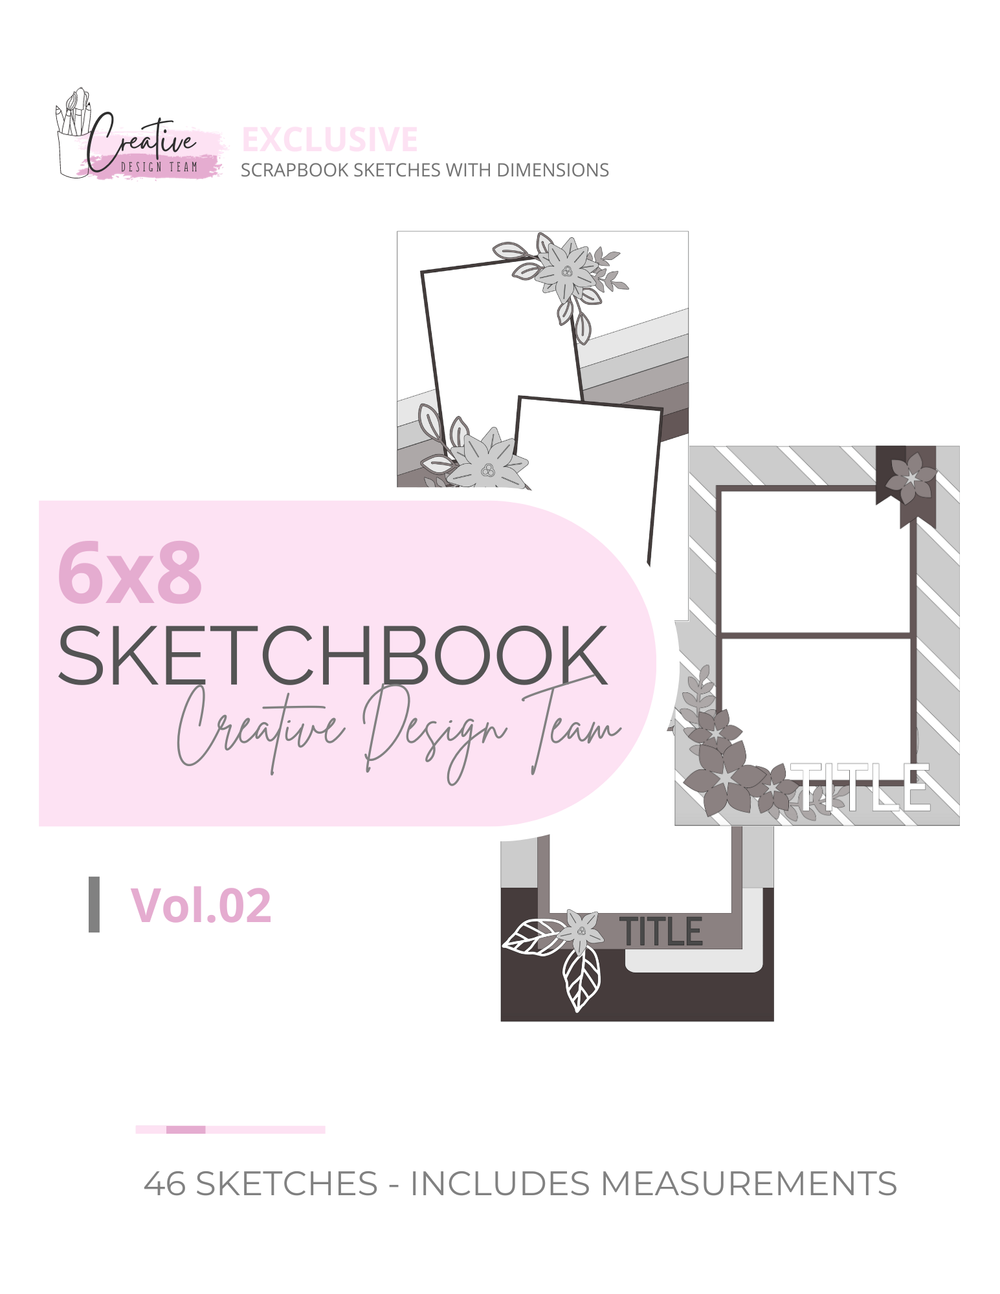 8.5 x 11 Scrapbook Sketch Book With Dimensions — Creative Design Team